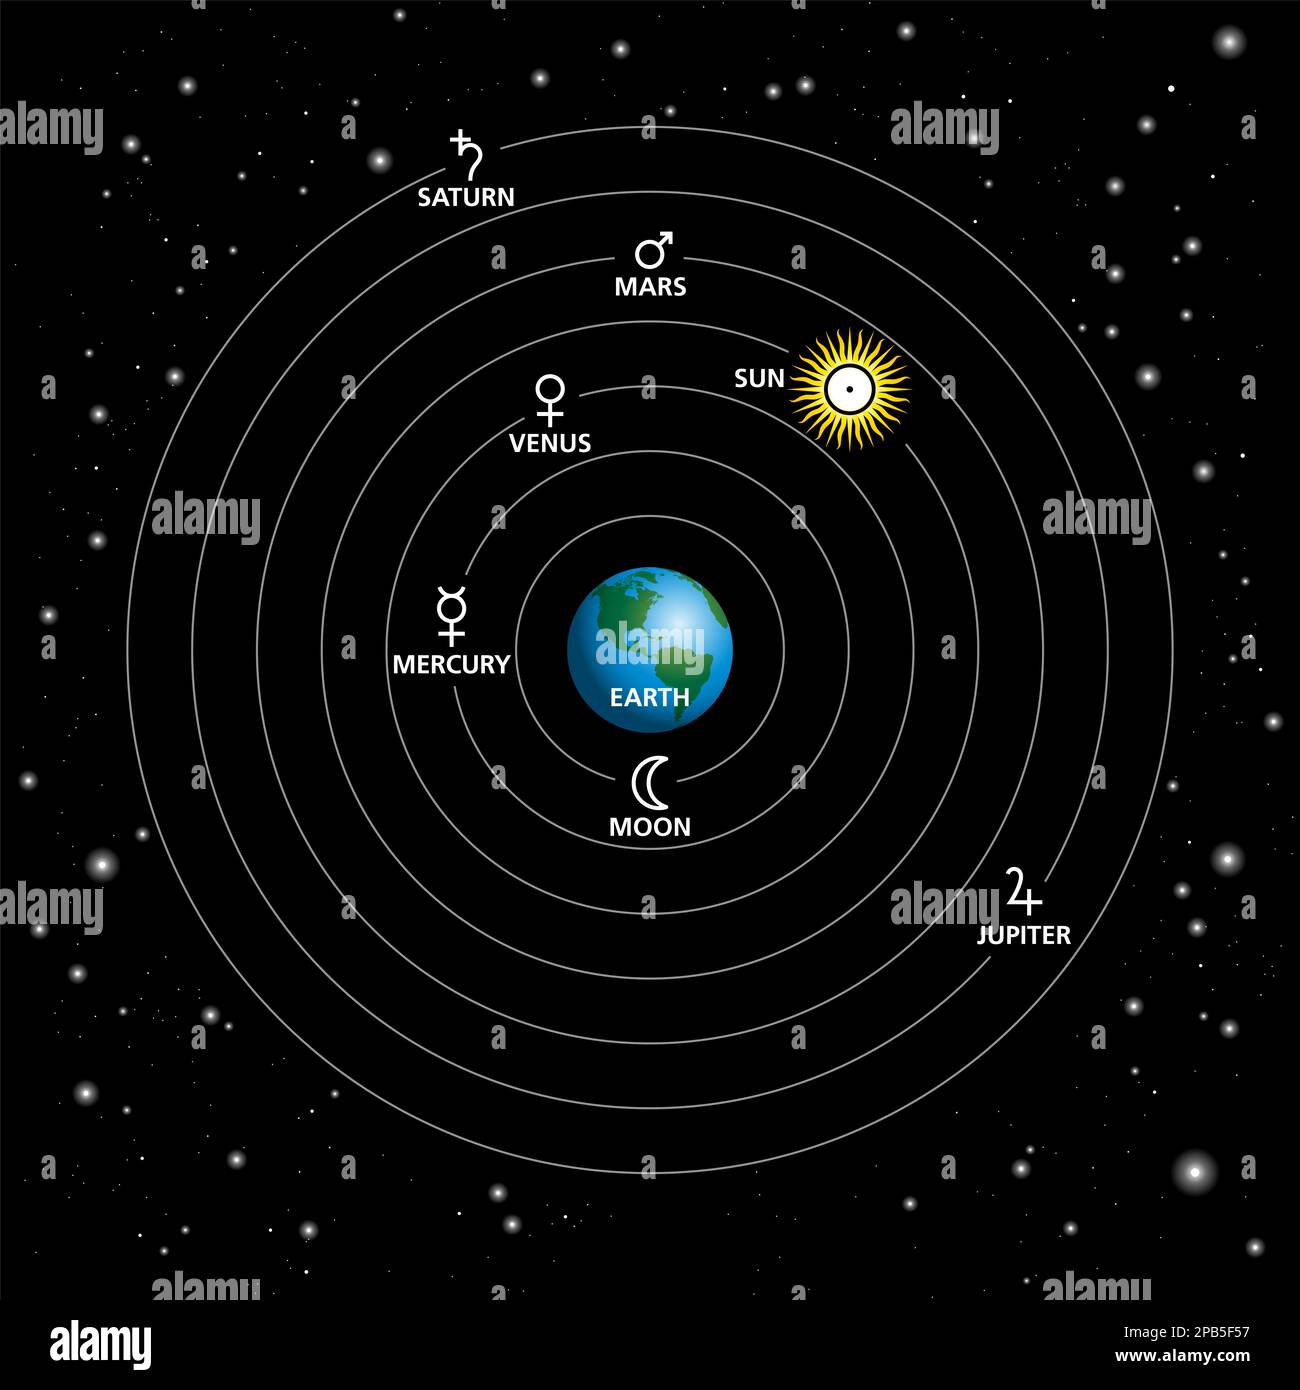 Modello geocentrico, sistema tolemaico o geocentrismo. Descrizione dell'Universo con la Terra al centro, con il Sole, la Luna, le stelle e i pianeti orbitanti. Foto Stock